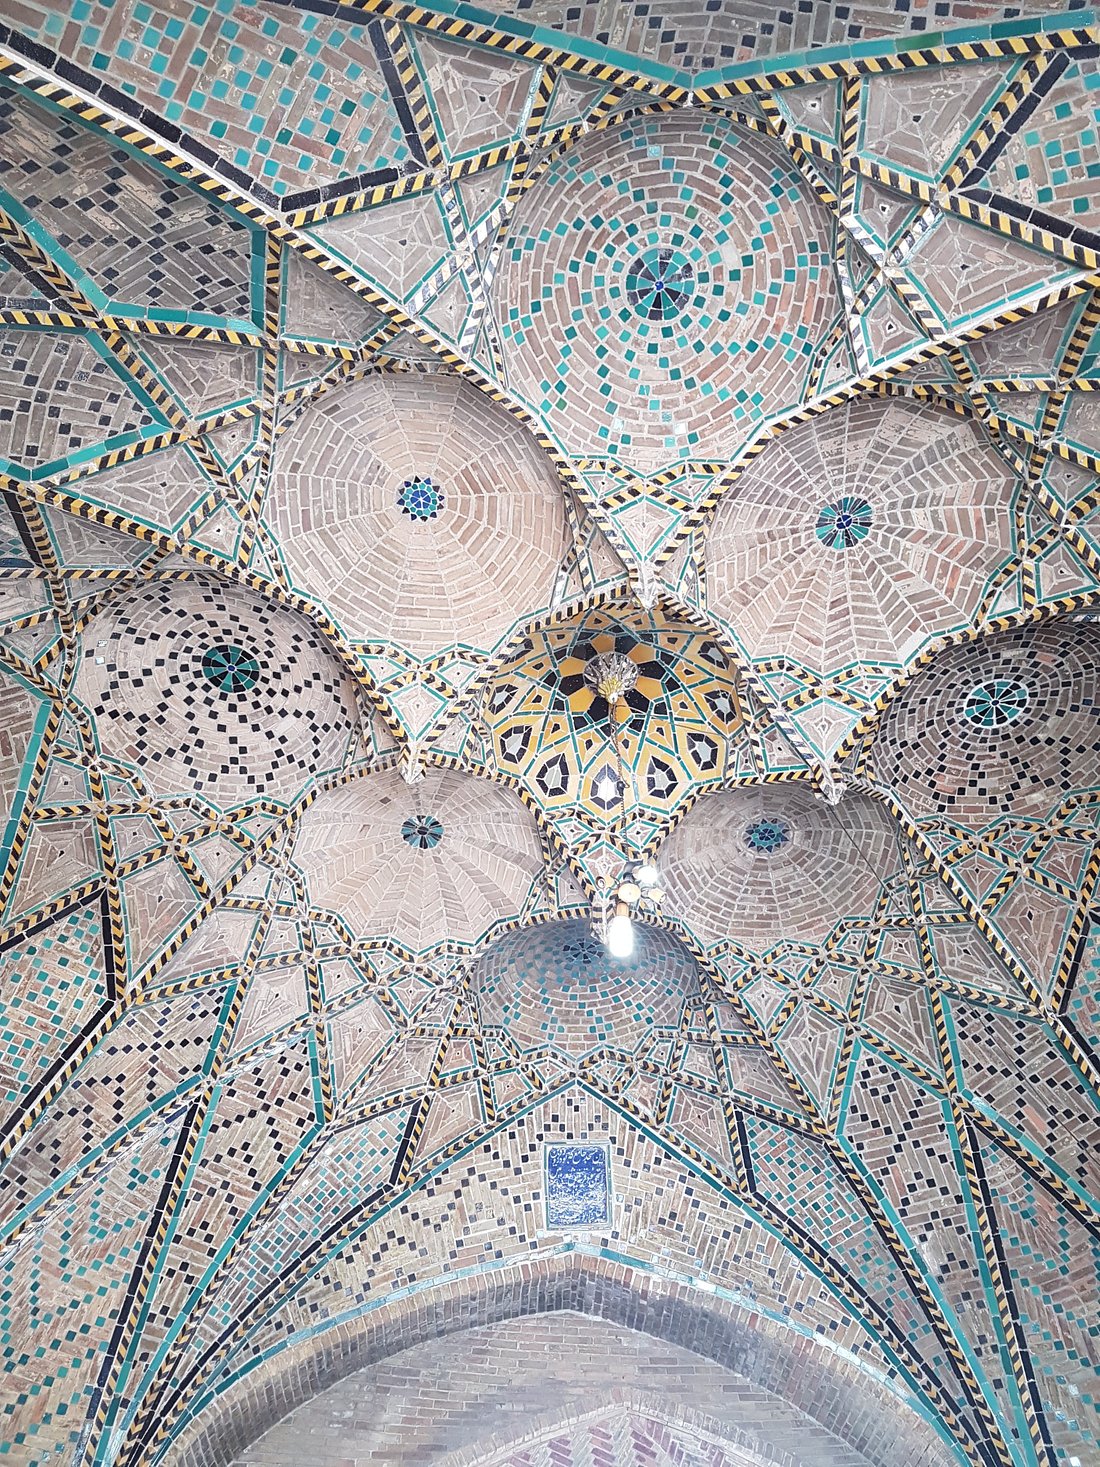 Jameh Mosque of Qazvin, Qazvin